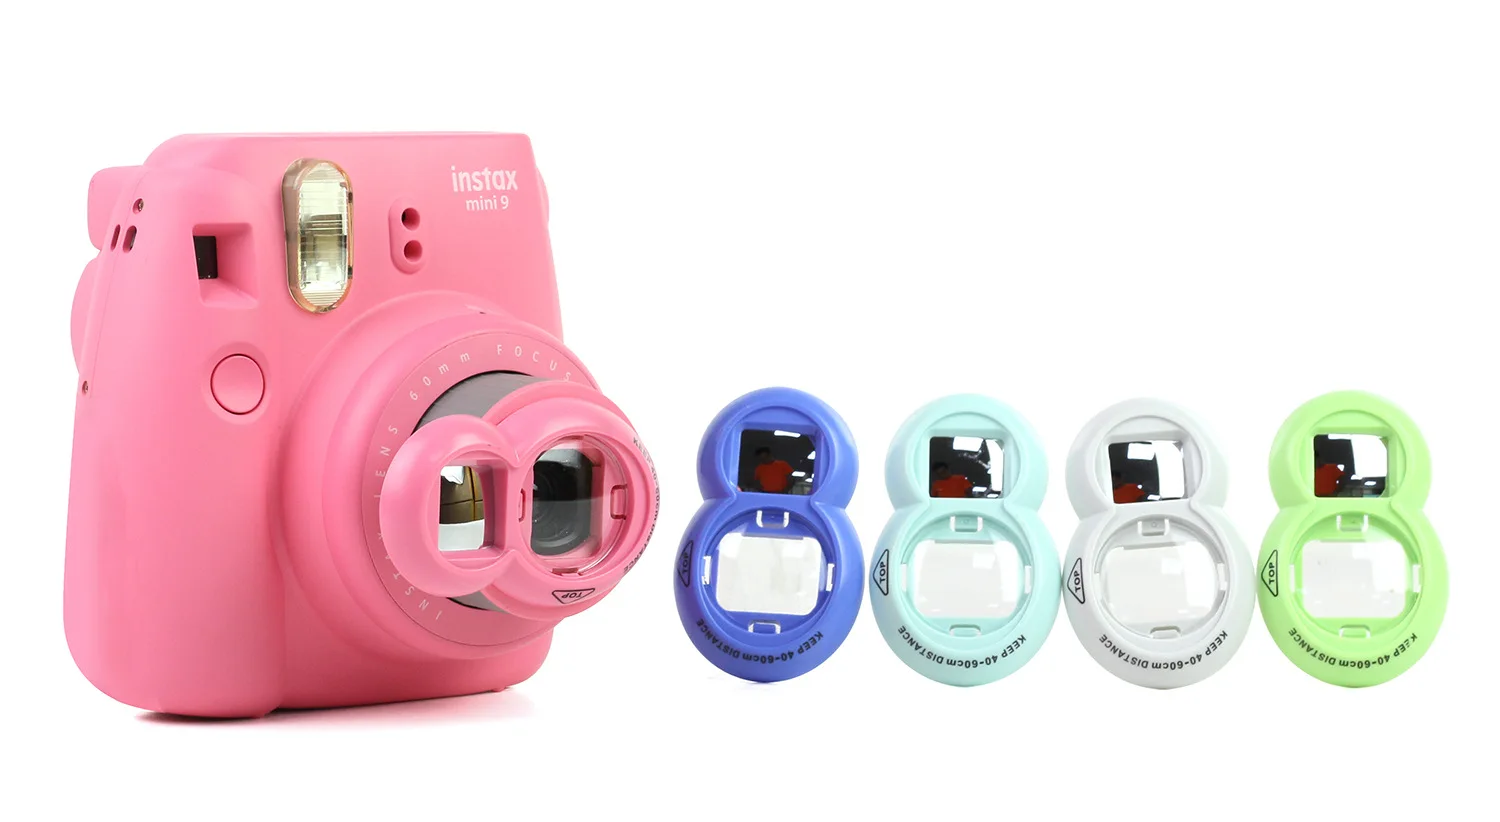 Fujifilm Instax Mini 9 камера моментальной печати с пленкой фото бумага камера защитный чехол сумка аксессуары комплект